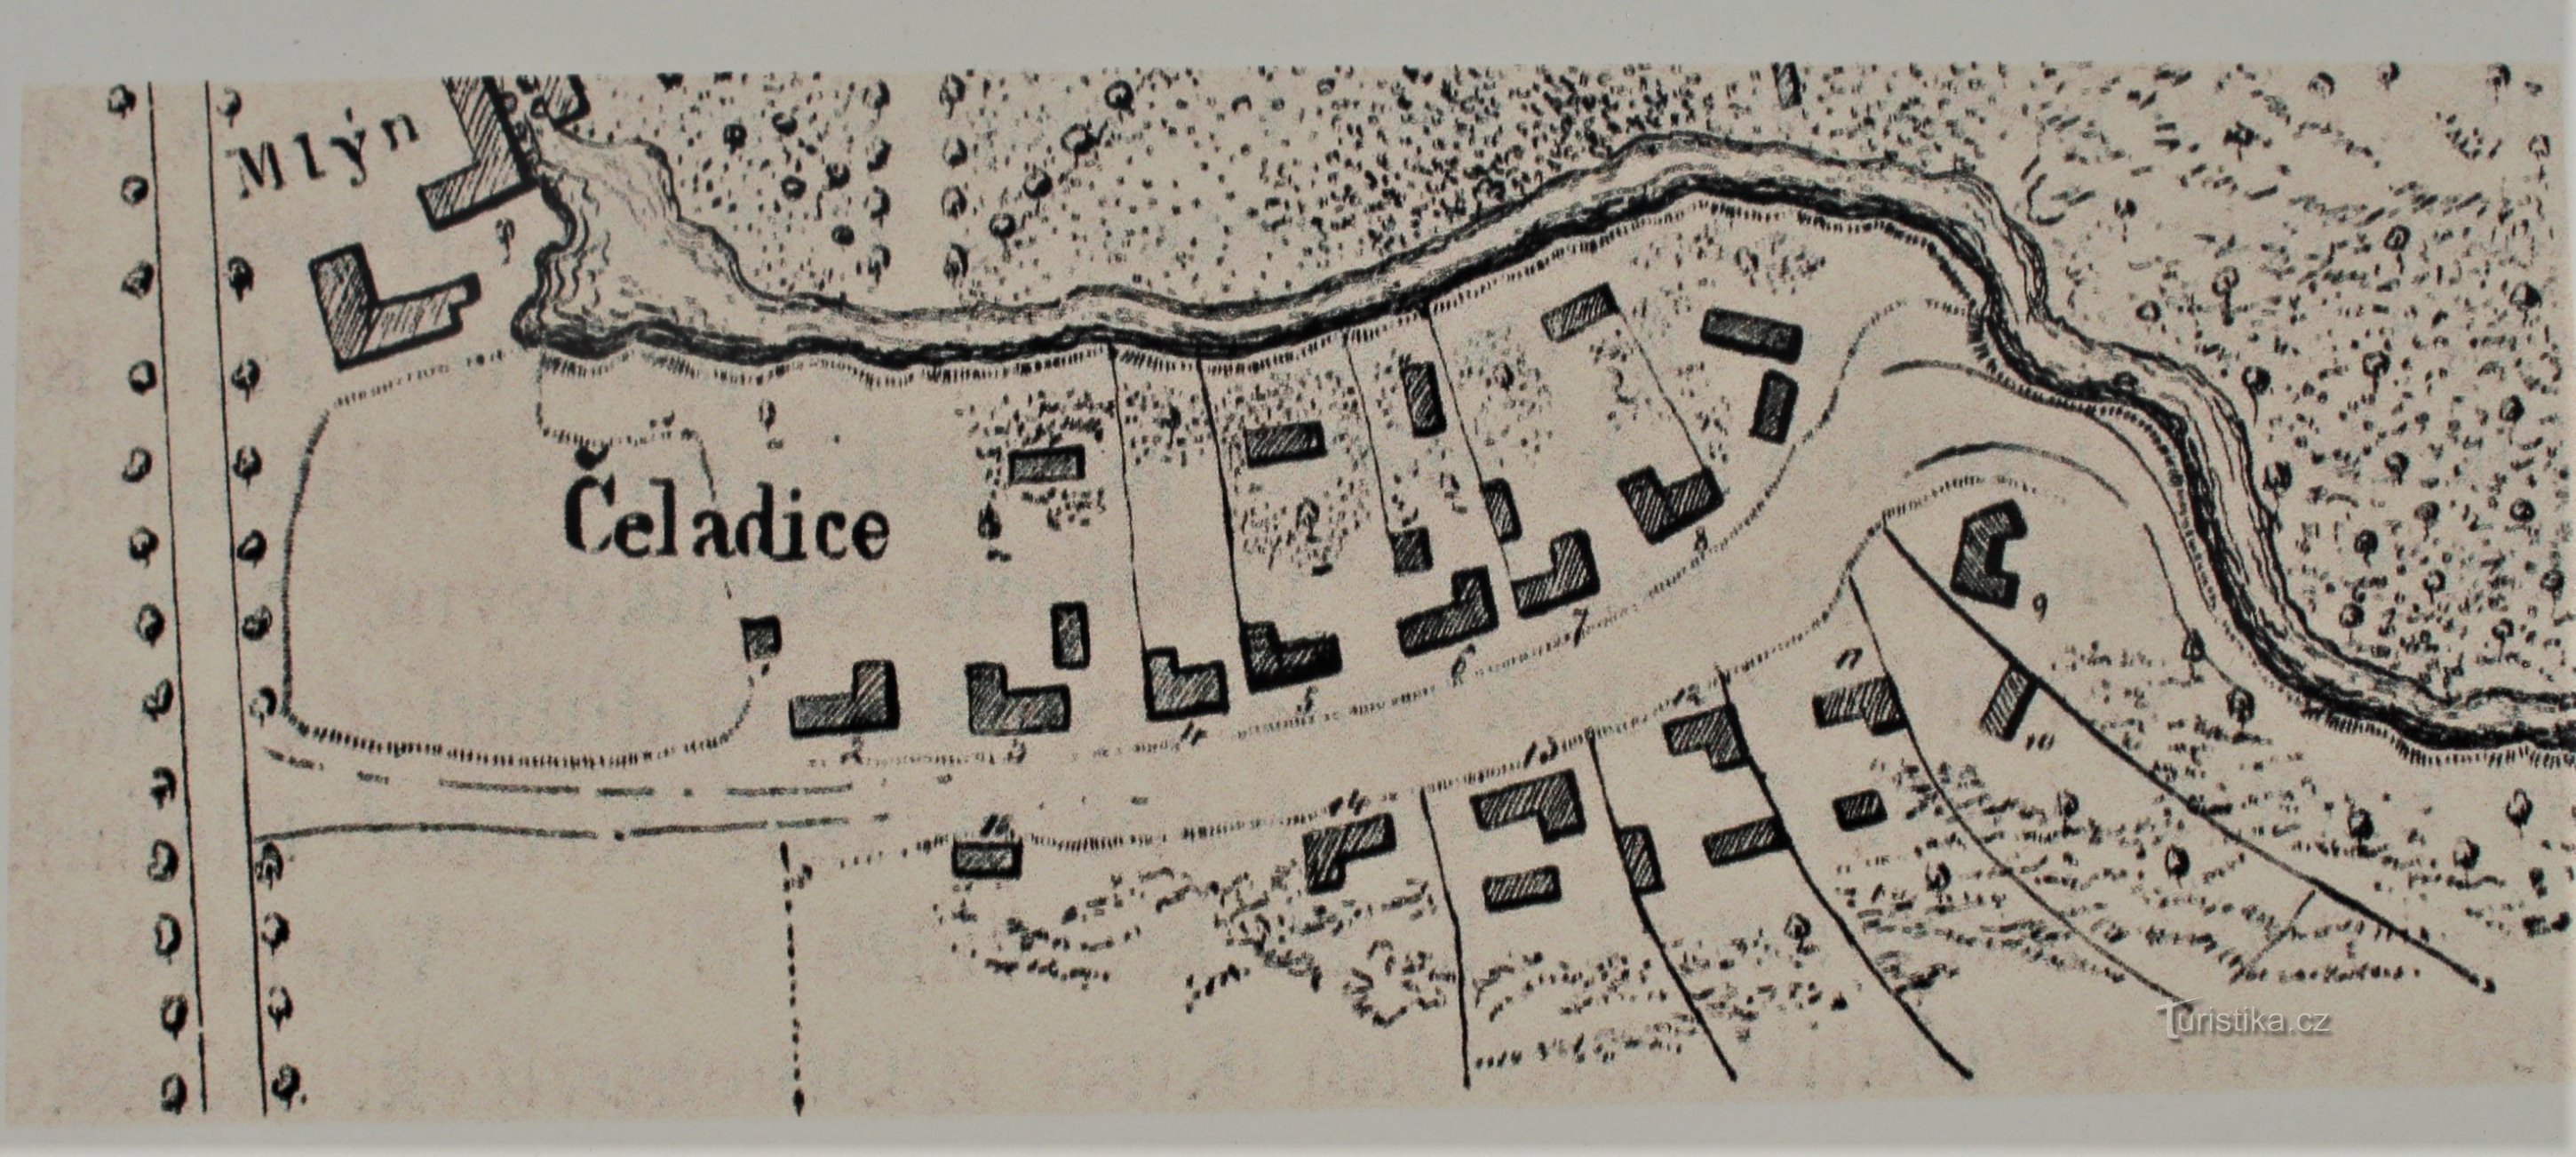 Čeladice térképe 1774-ből (az információs tábláról készült)